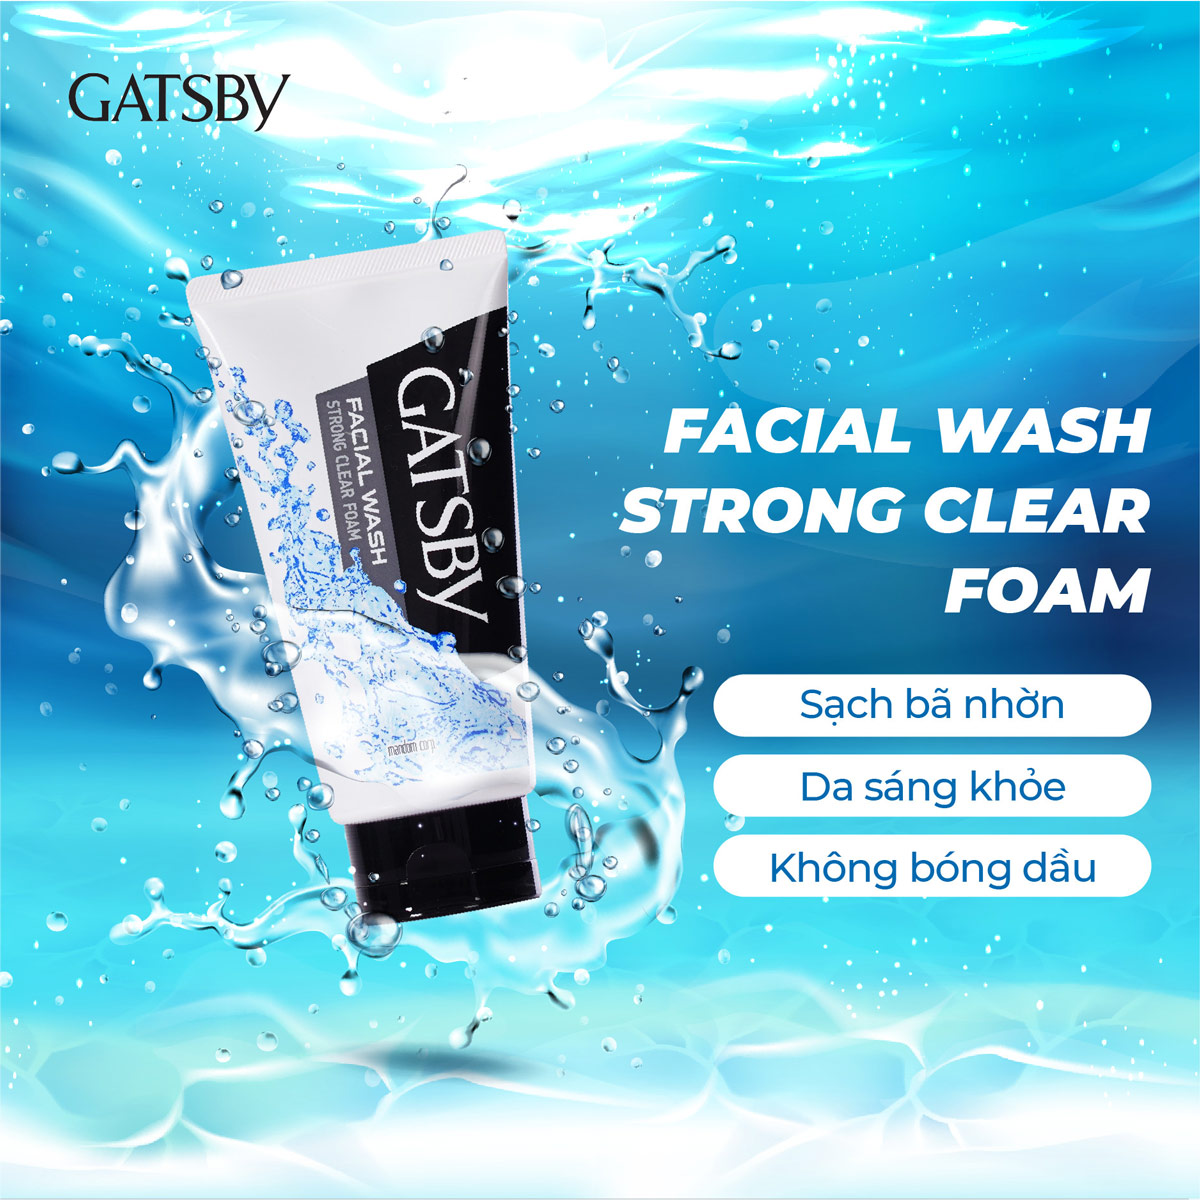 Sữa Rửa Mặt GATSBY Facial Wash Strong Clear Foam 130g